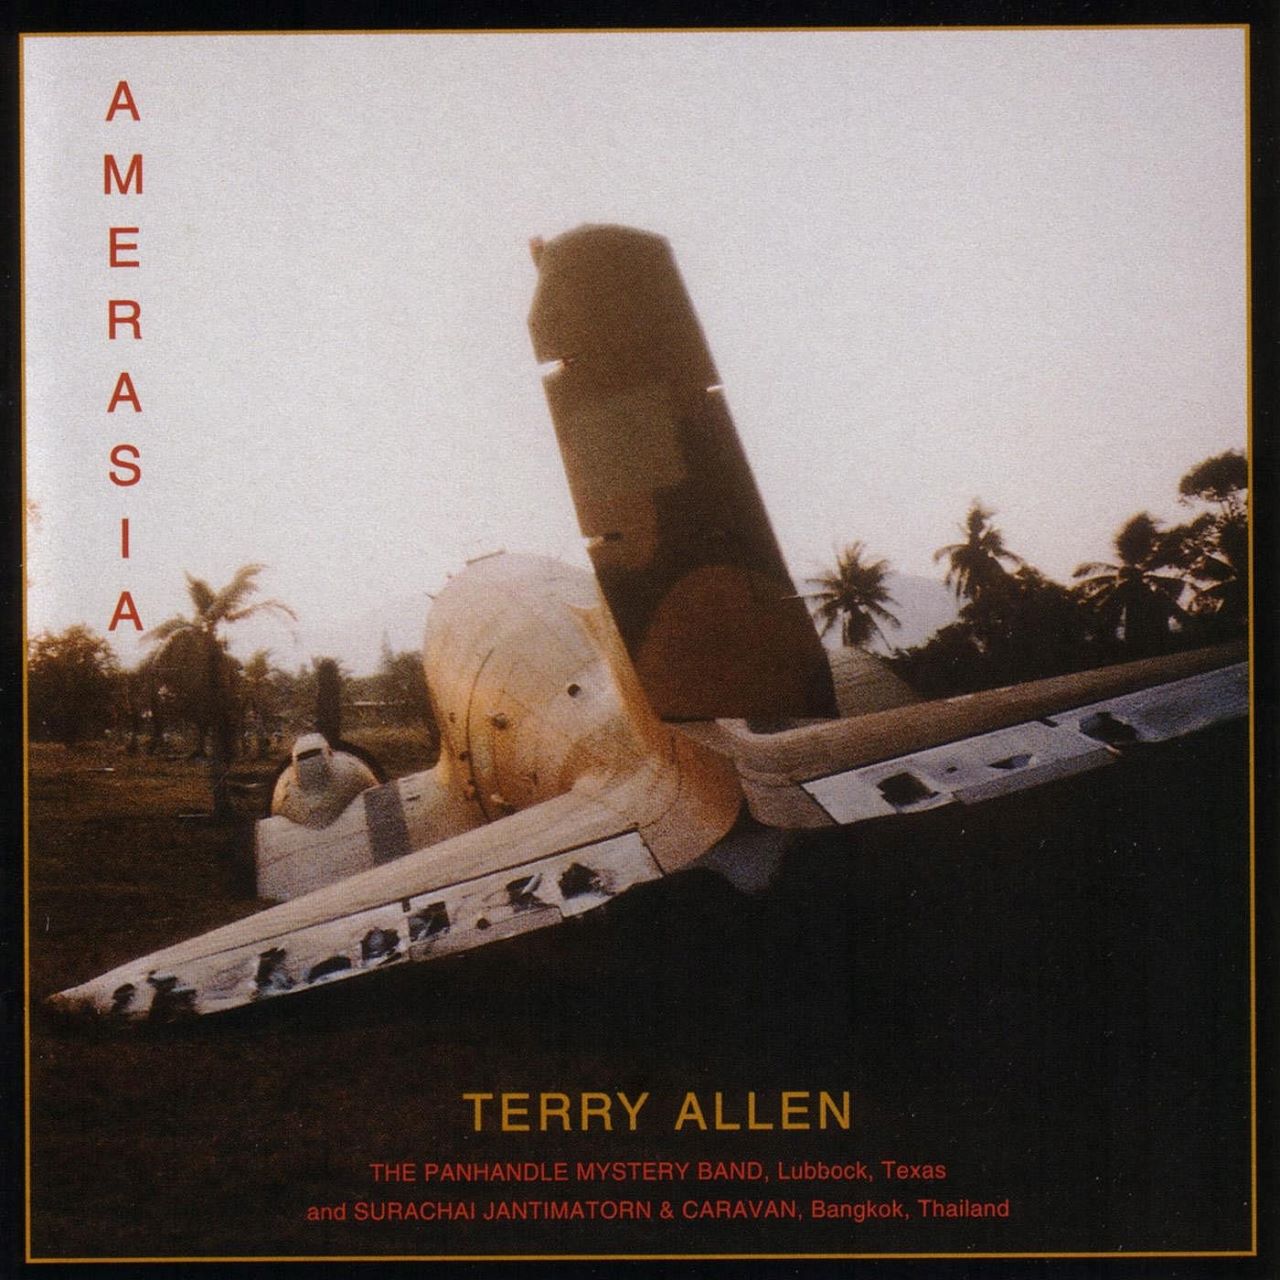 Terry Allen - Amerasia cover album